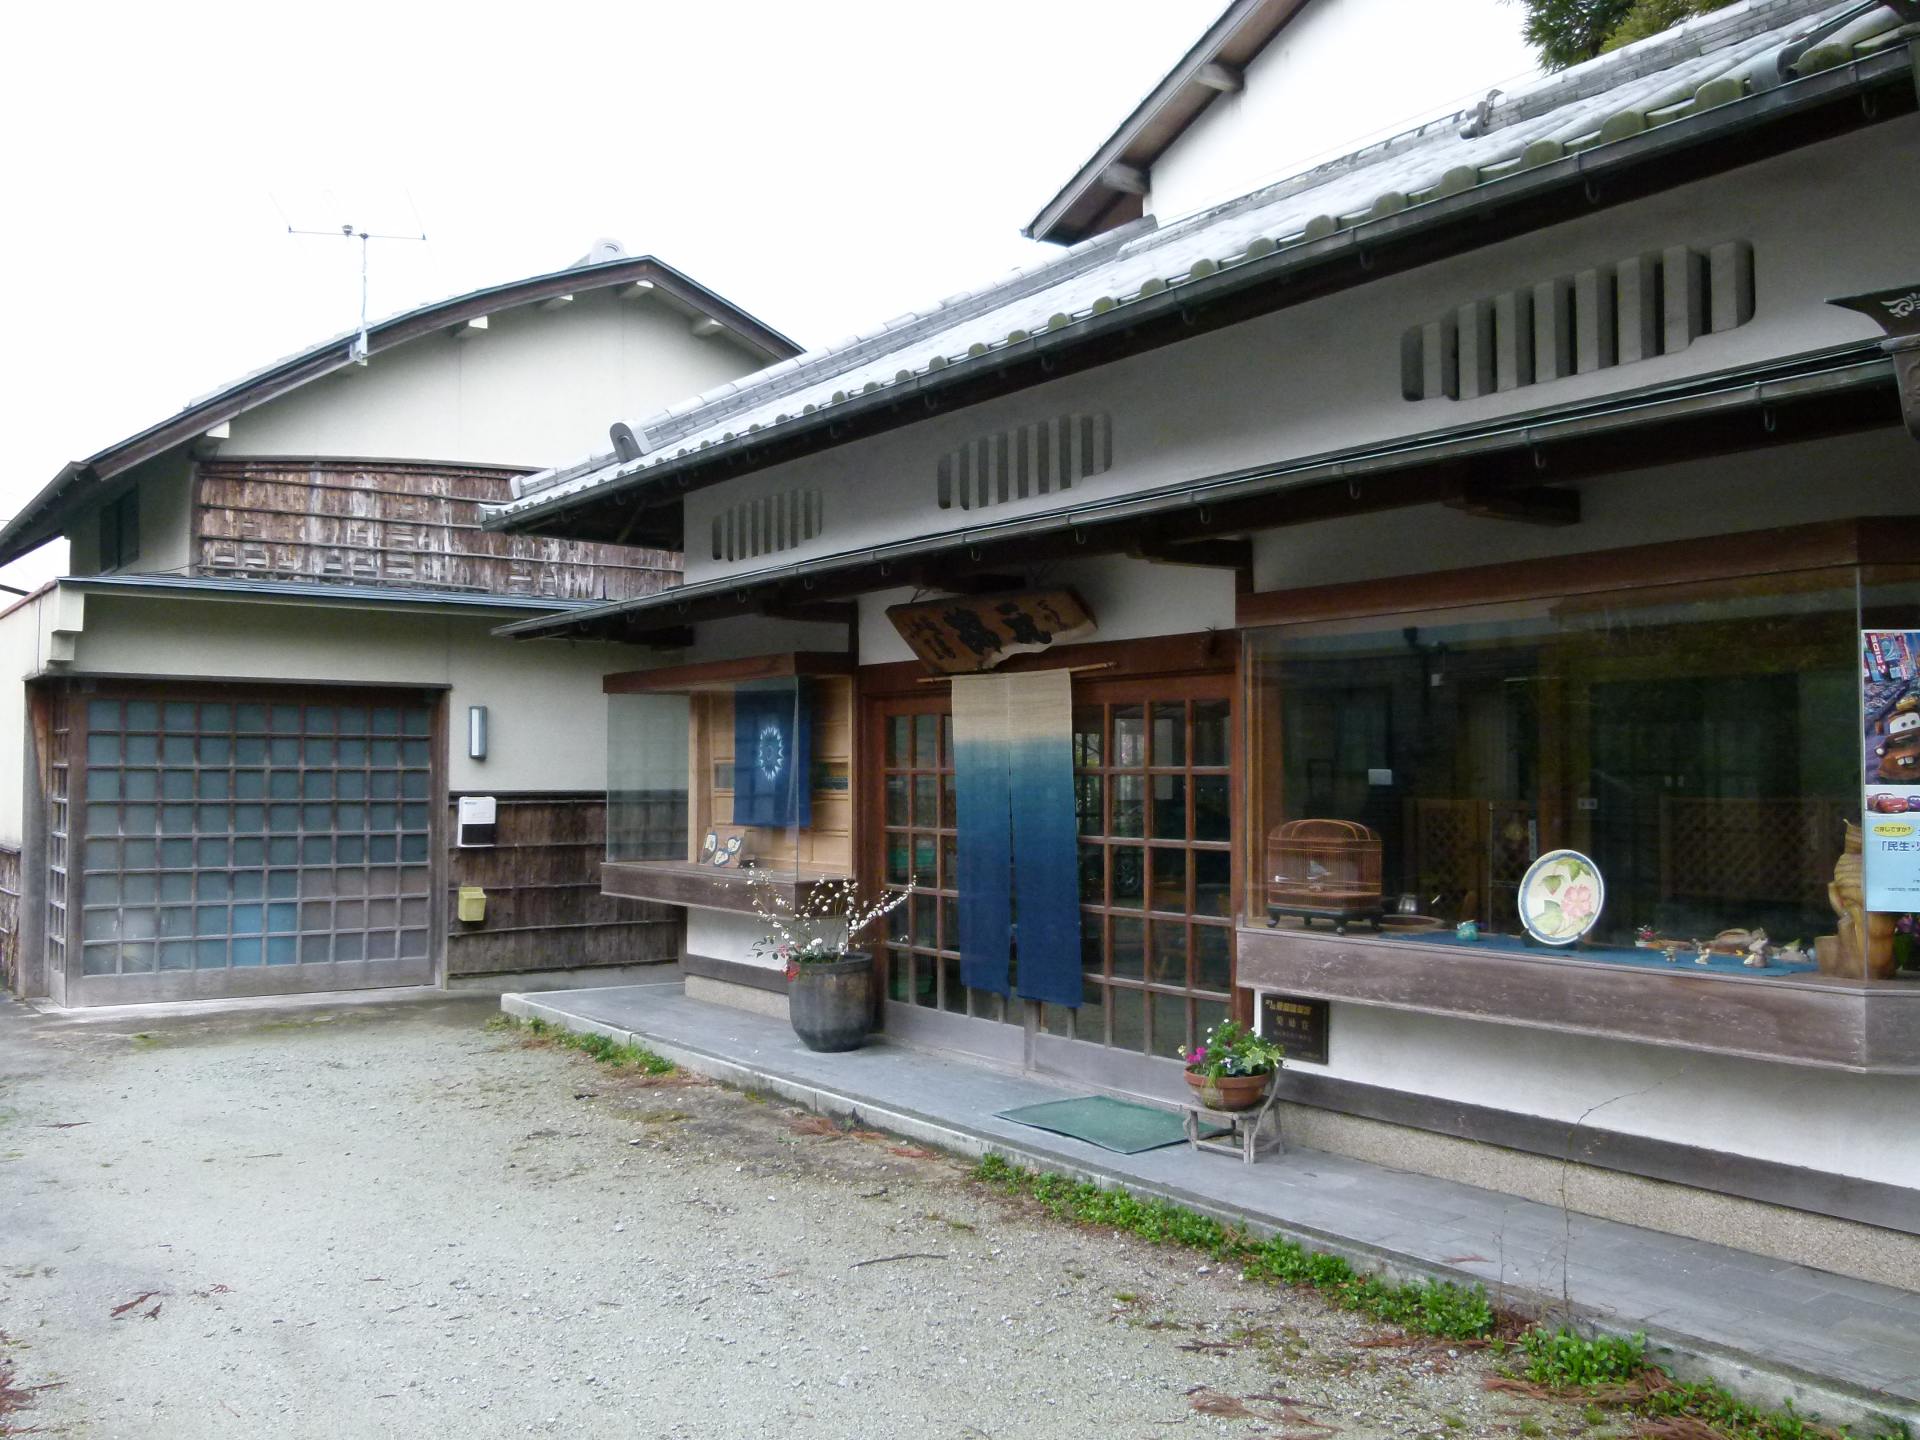 本藍染めの暖簾(のれん)やタペストリーが日本伝統家屋とマッチ。